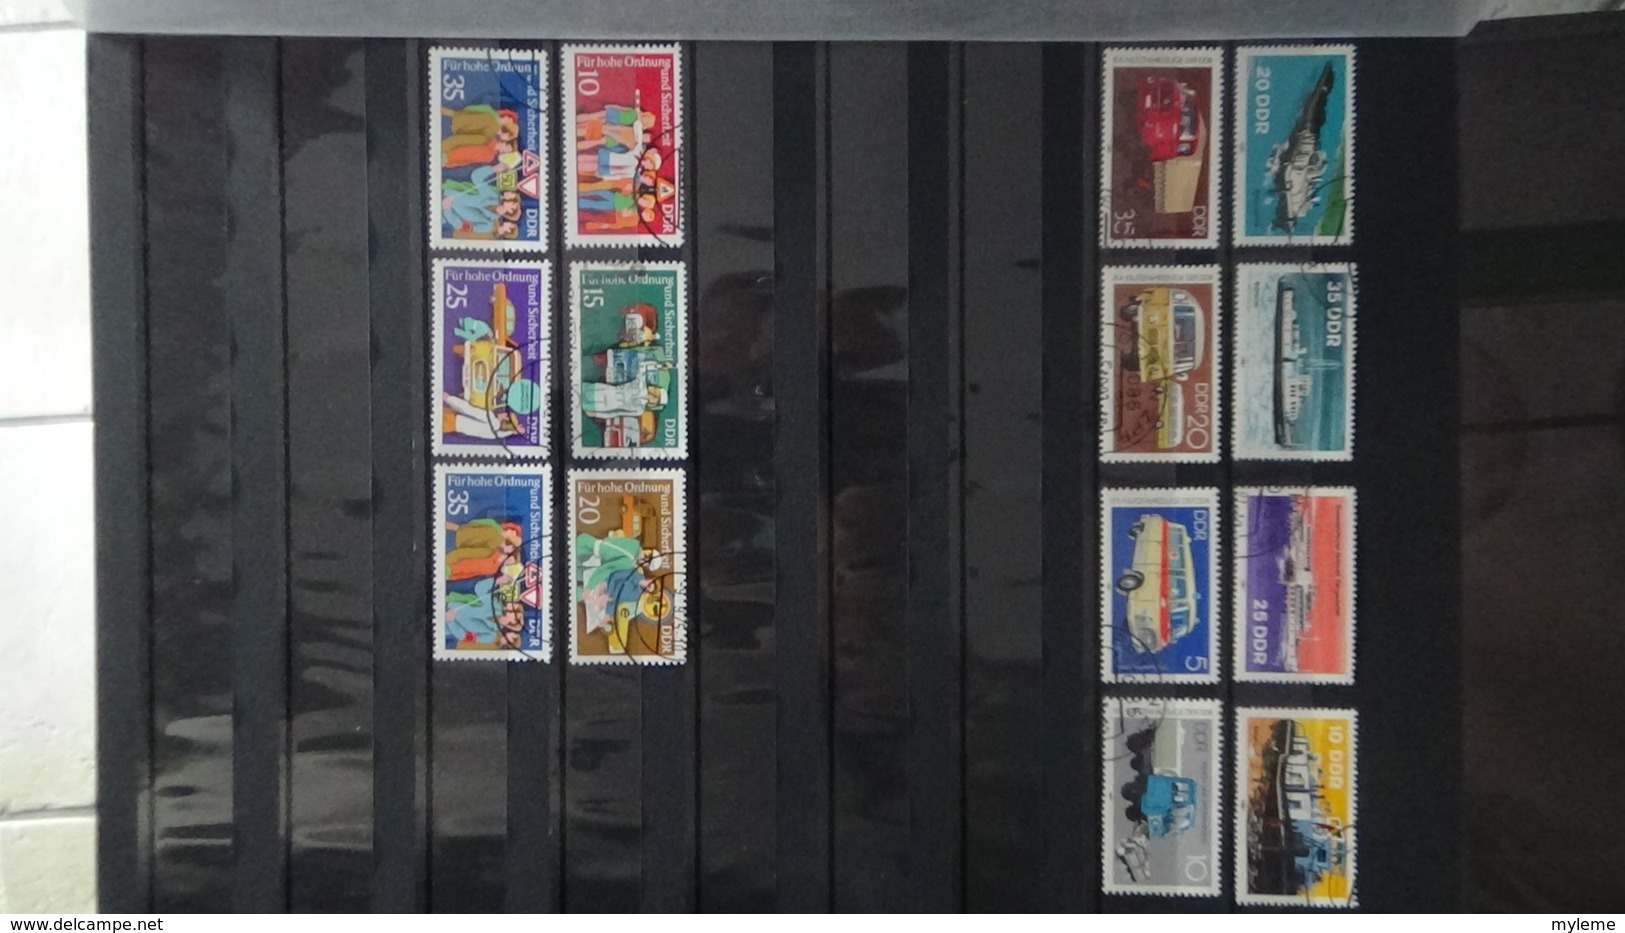 Collection Allemagne majorité oblitérés dont timbres ** de France côte 299 euros hors timbres de l'album !!!